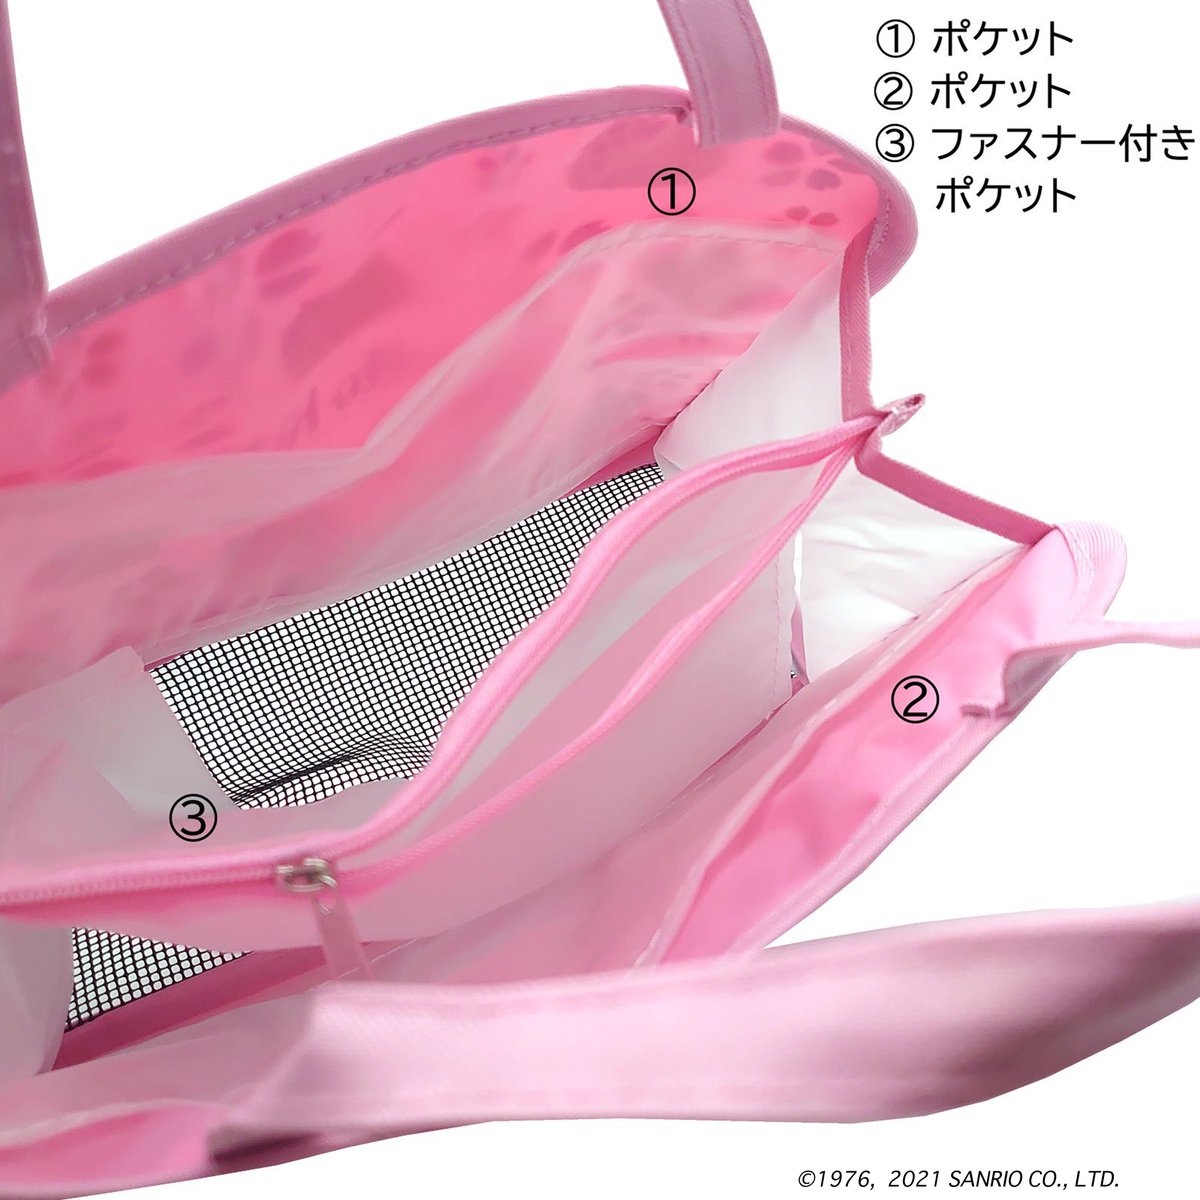 「ハローキティ 温泉バッグ・桜柄可愛いピンク地に桜とキティがちりばめられたデザイン」|ご当地キティのイラスト